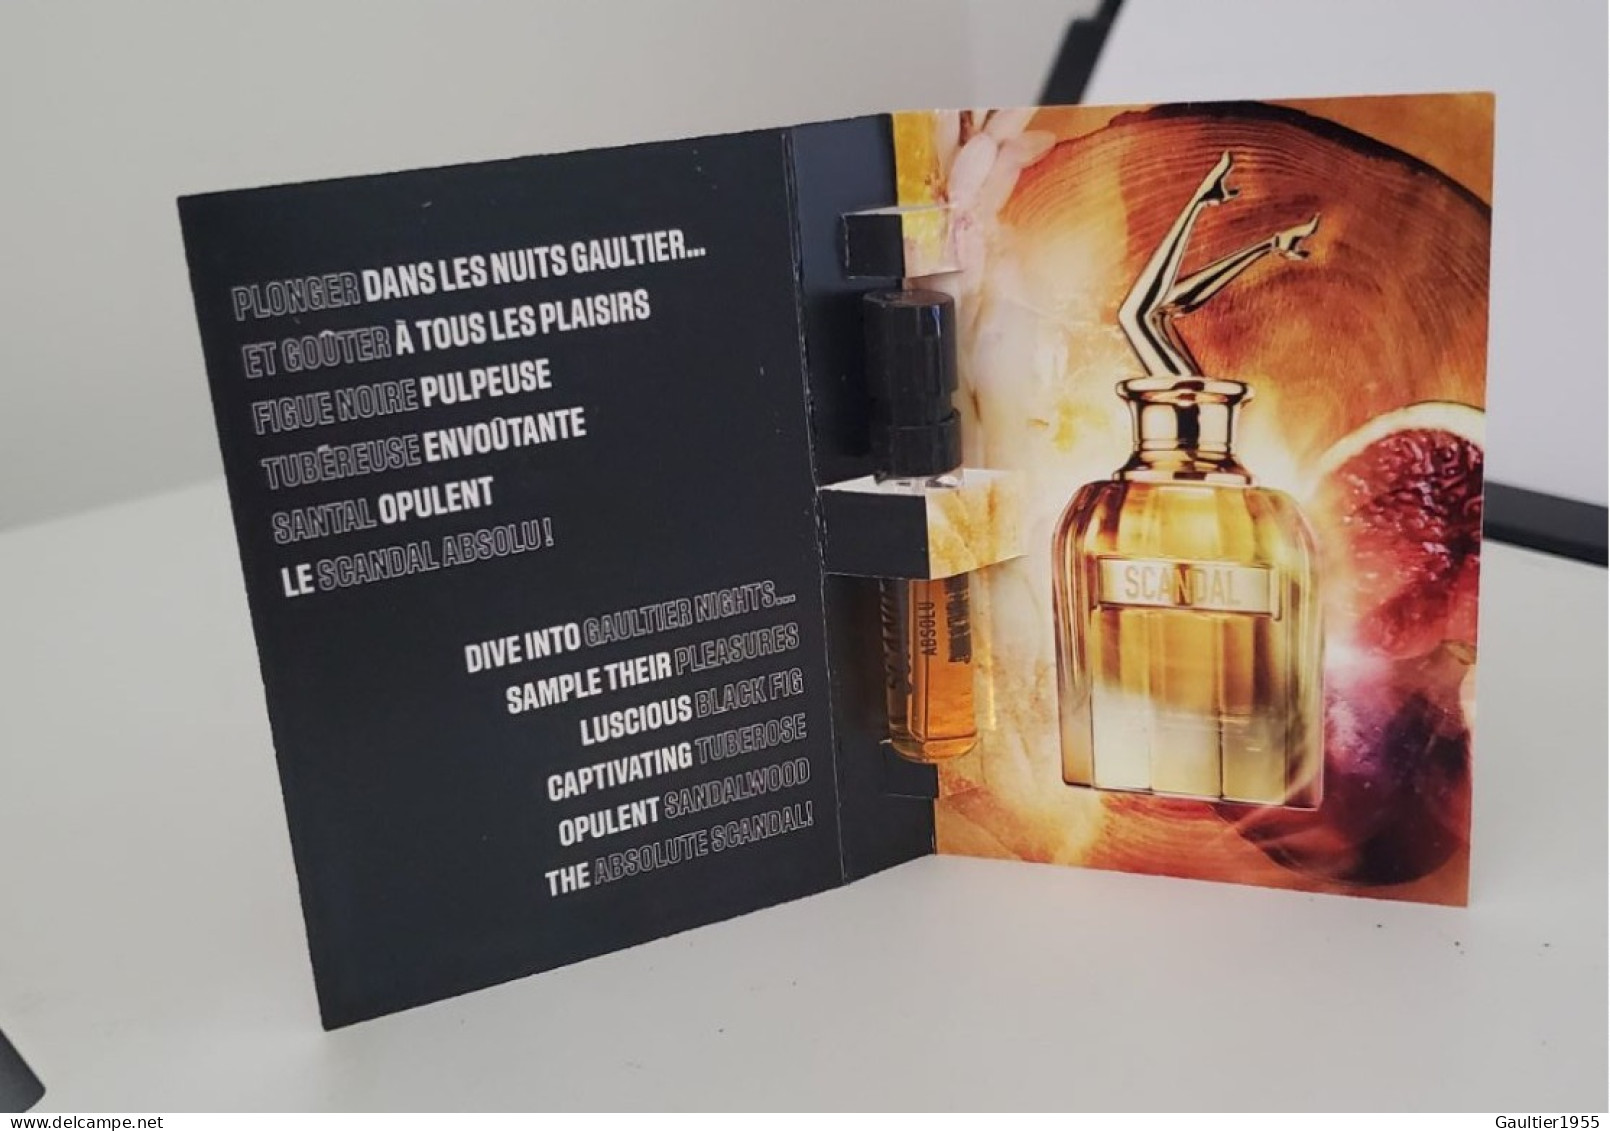 Echantillon Tigette - Perfume Sample - Scandal Absolu De Jean Paul Gaultier - Campioncini Di Profumo (testers)